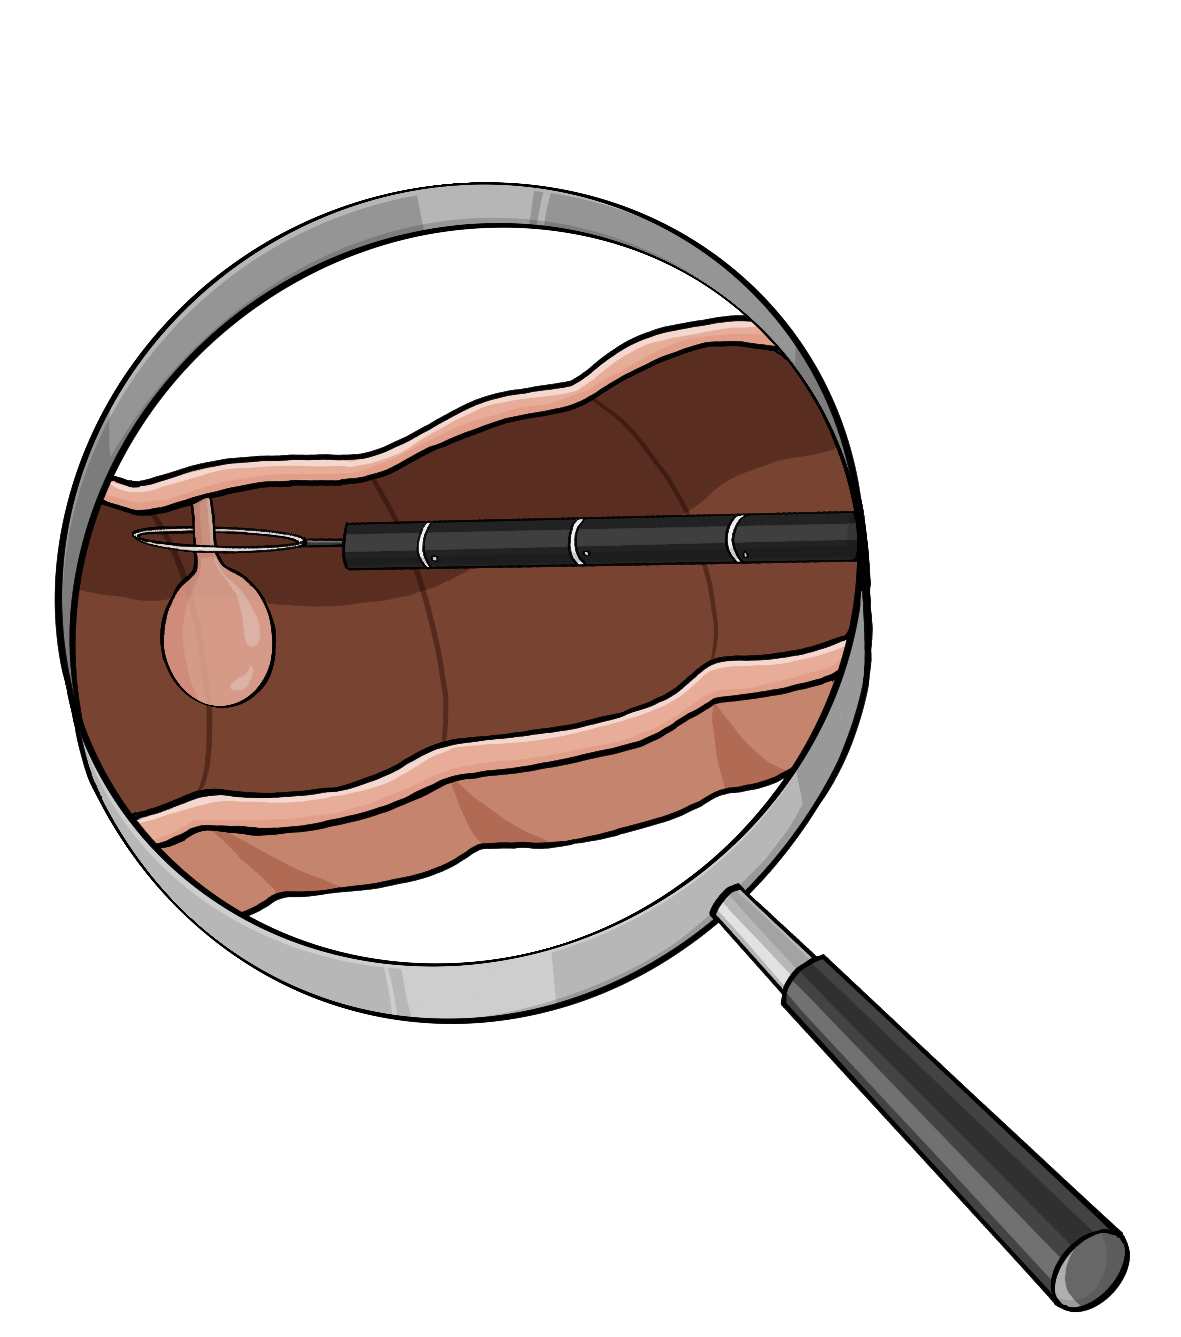 Eine Lupe. Unter der Lupe ist ein Querschnitt von einem Darm. An der oberen Darmwand ist ein runder Knubbel. Um den Knubbel liegt eine dünne Schlinge an einem Stab. 